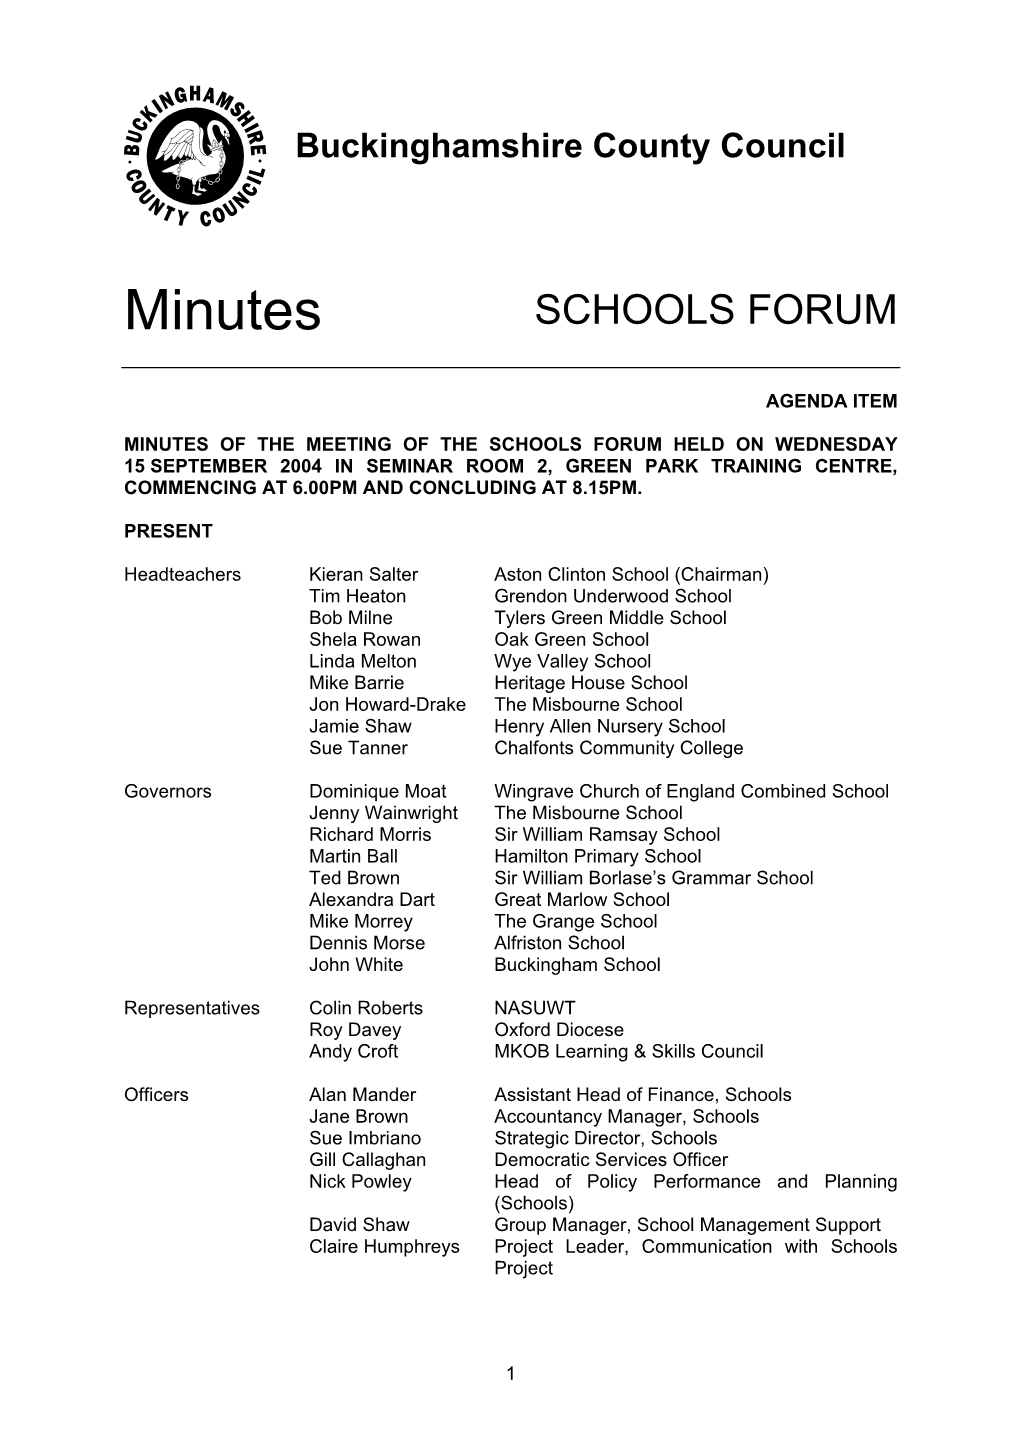 Schools Forum Minutes 15 September 2004